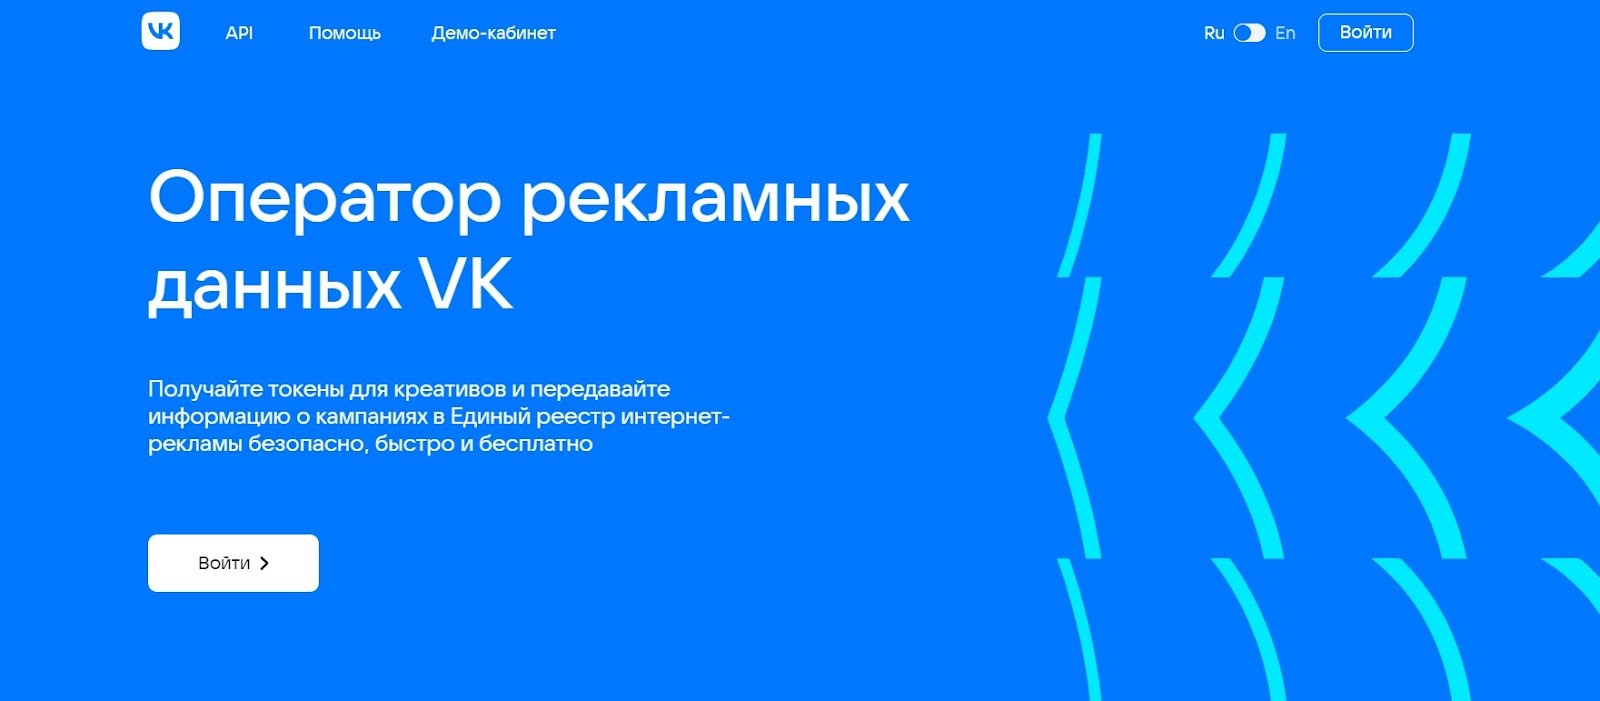 Главная страница ОРД Вконтакте